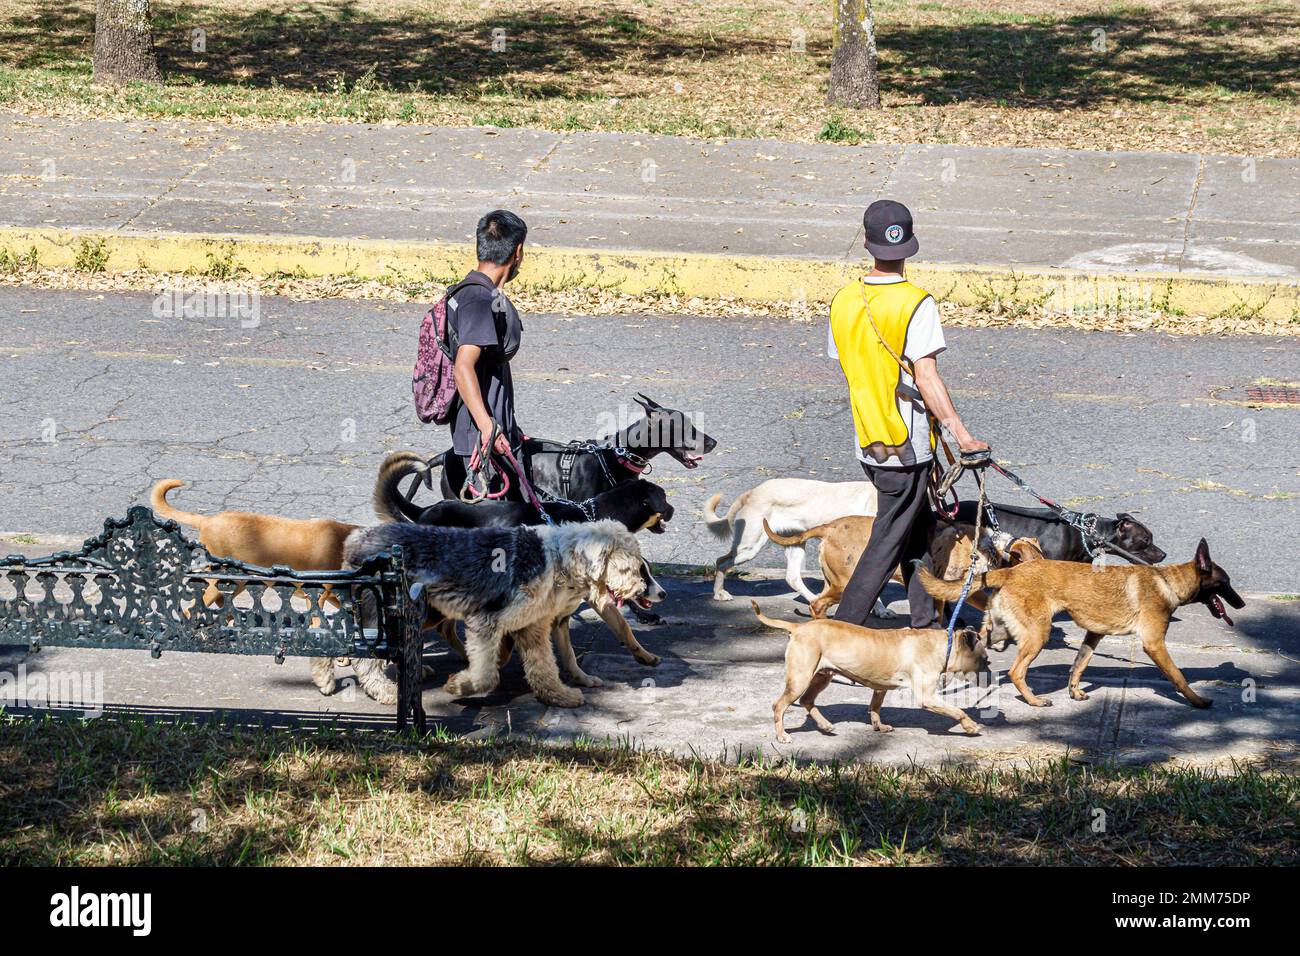 Mexiko-Stadt, Bosque de Chapultepec Abschnitt 2 Wald Hunde Leine Leine Gehhilfen, männliche Männer, Erwachsene Erwachsene, Bewohner, Fußgänger Stockfoto